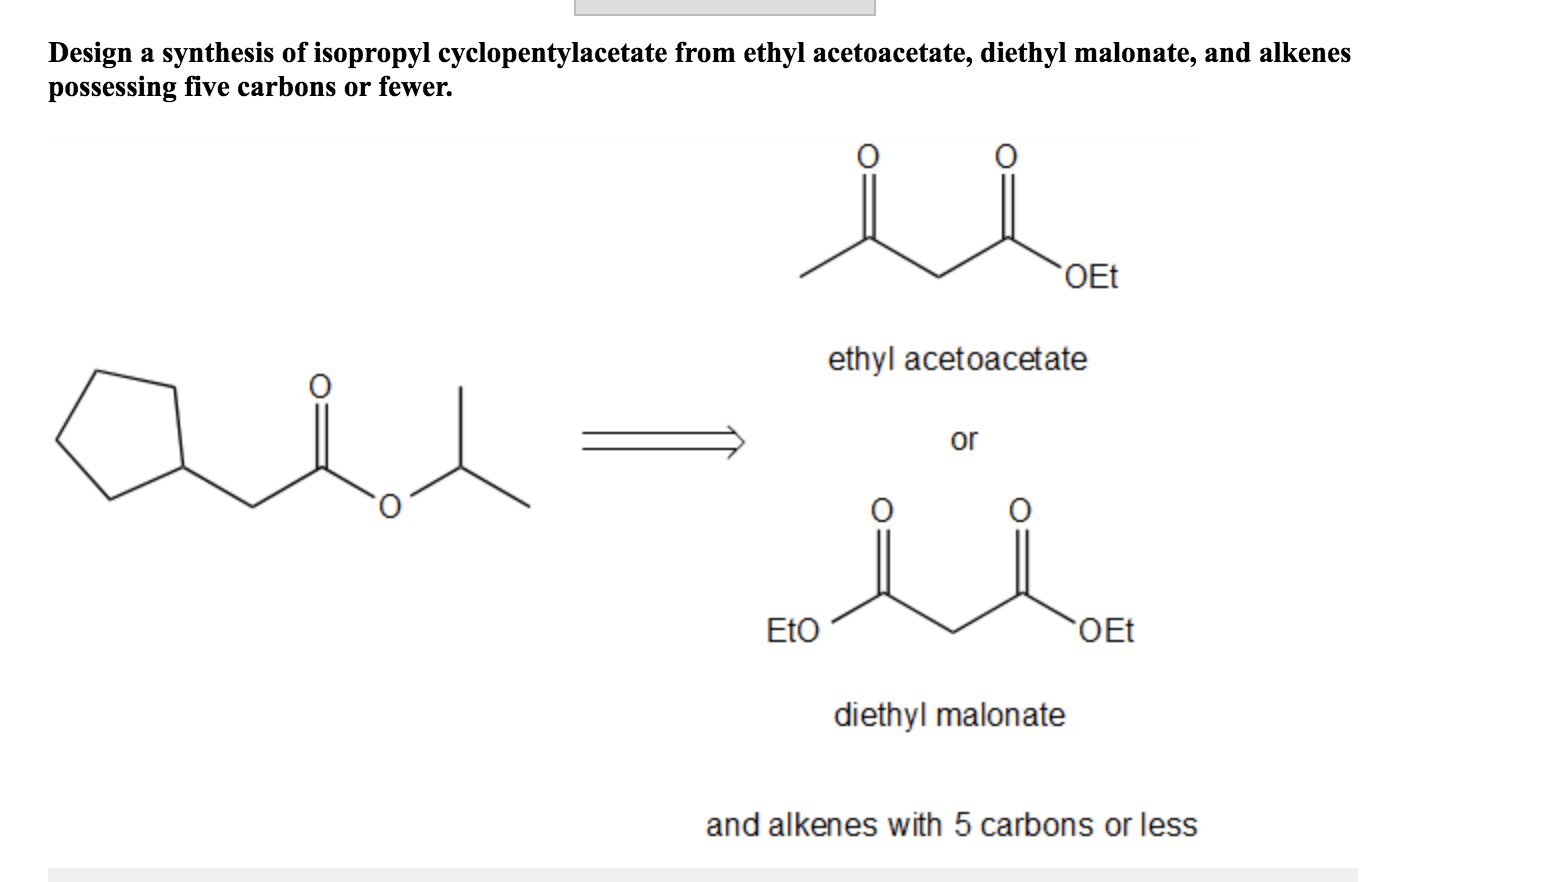 Ethyl acetoacetate Synthesis. Изоприл структура. Формиат фениламмония. Изопропил. П этил